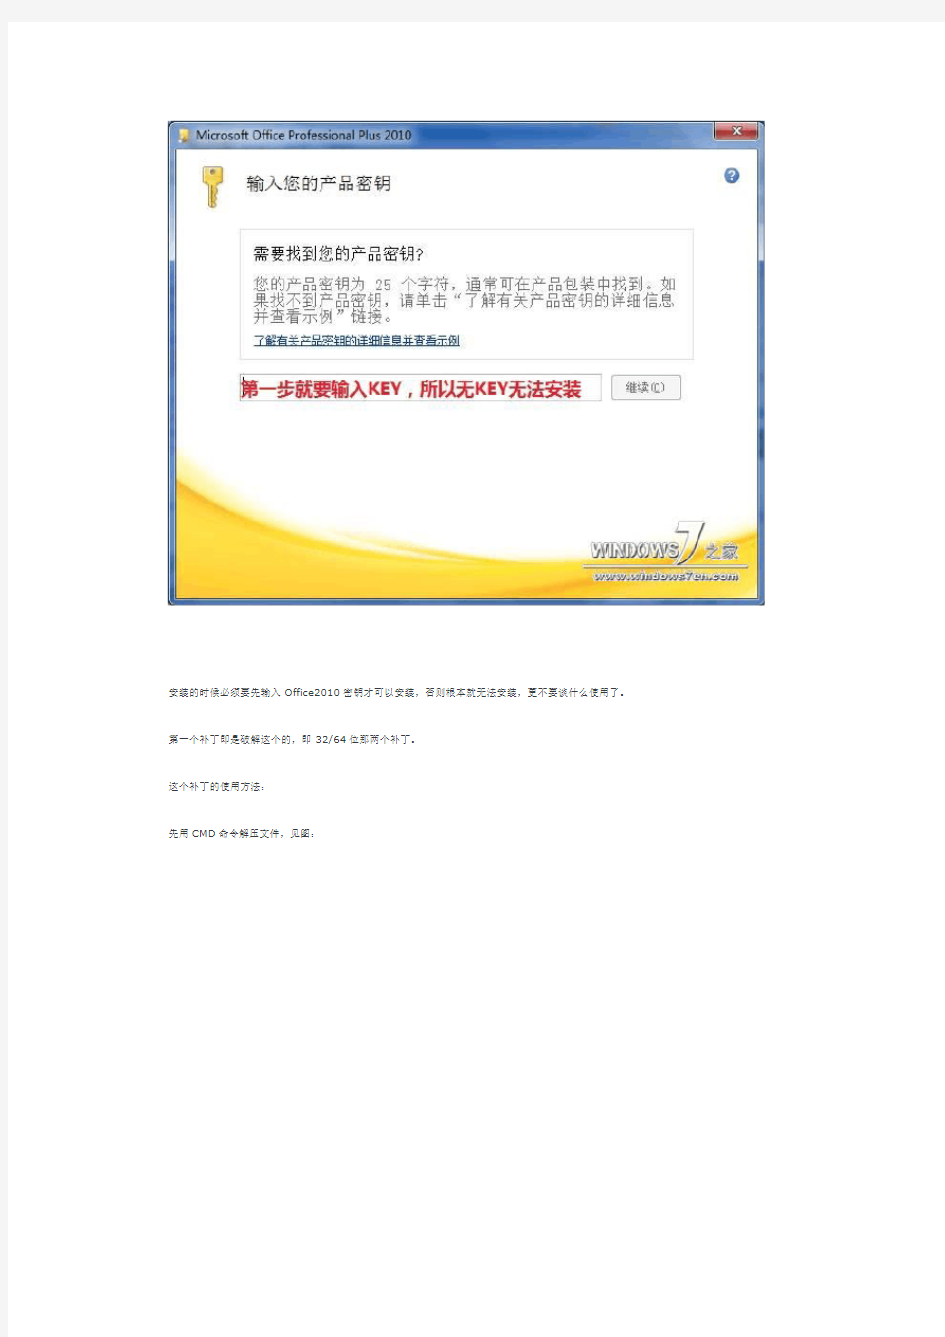 Office 2010中文版激活破解方法 无需密钥KEY